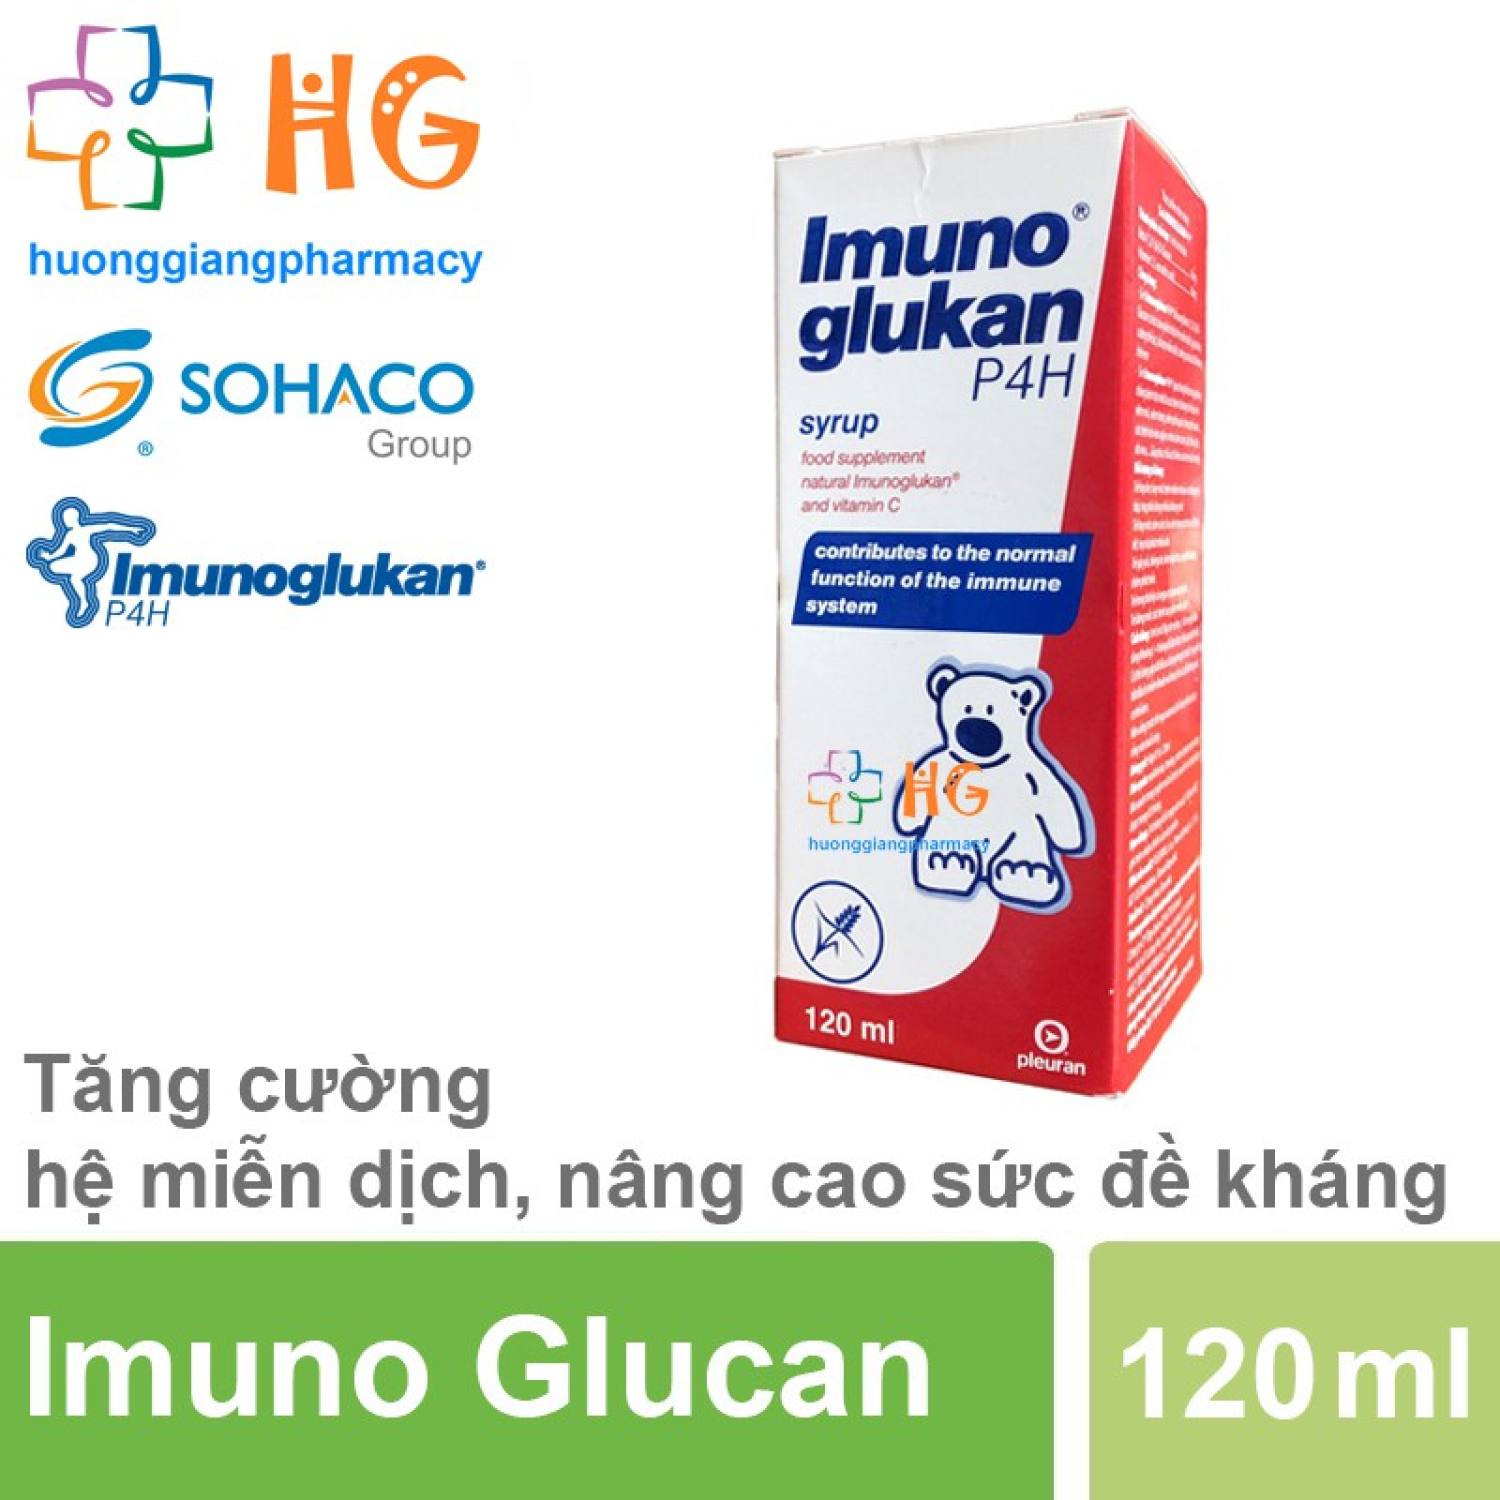 Imunoglukan P4H - Tăng cường hệ miễn dịch, nâng cao sức đề kháng